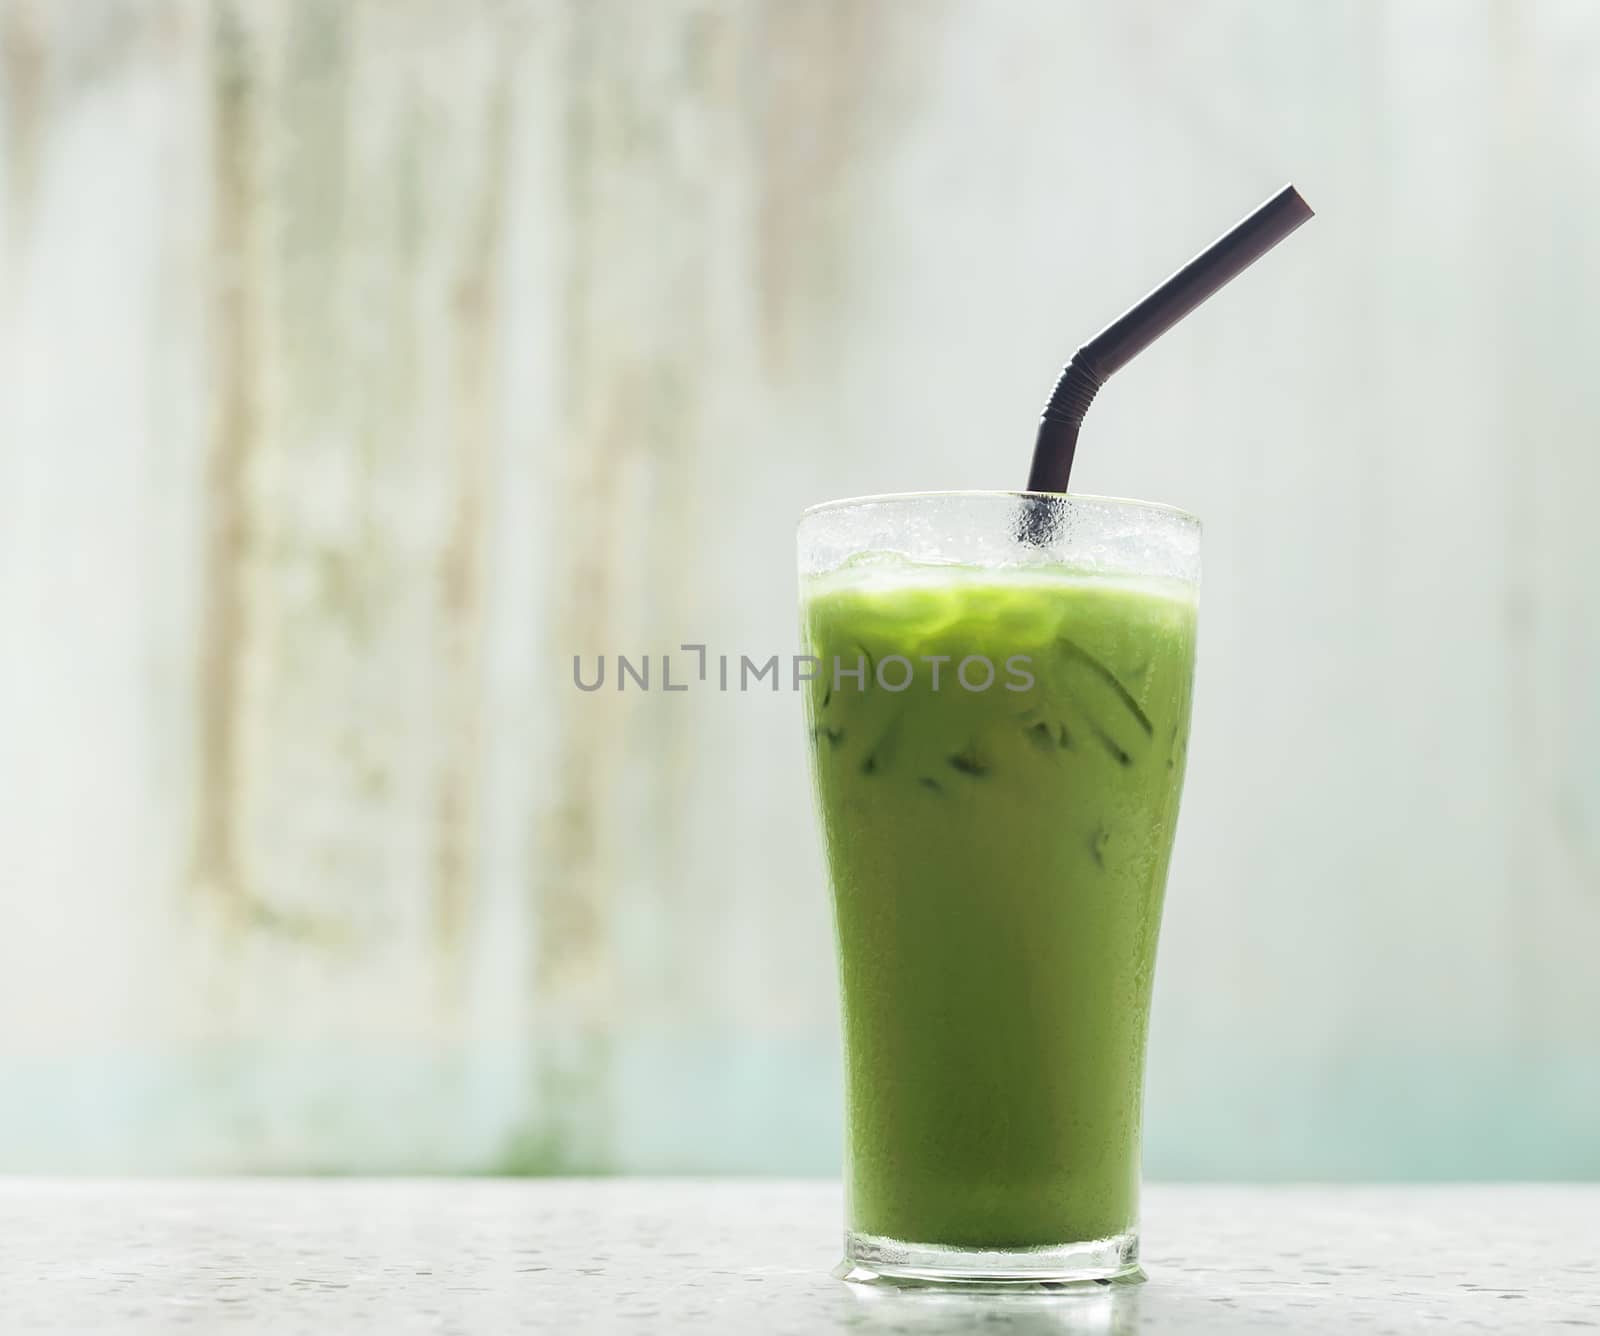 Ice milk green tea, famous drink by jimbophoto